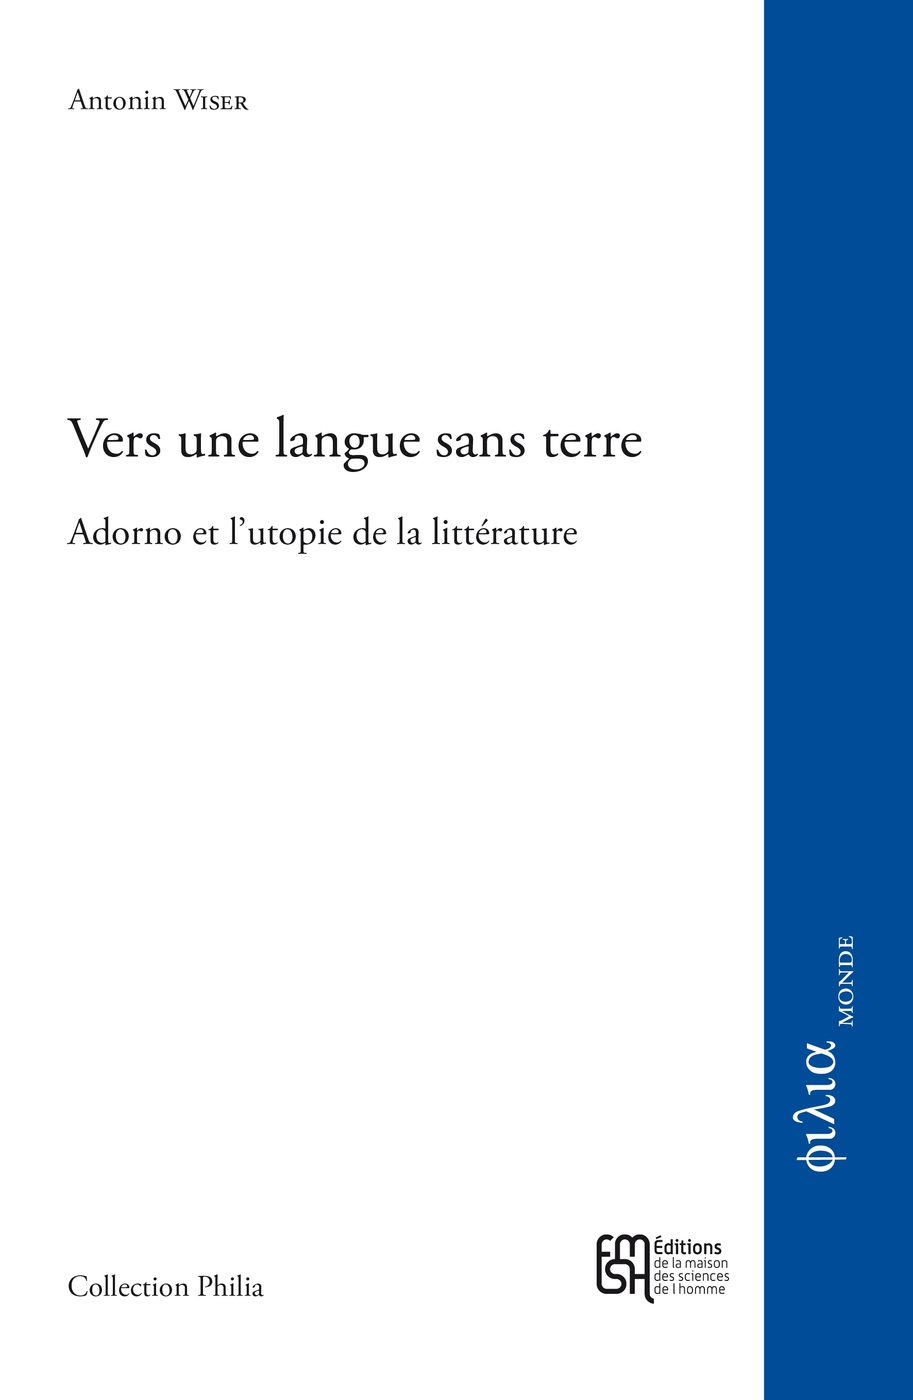 A. Wiser, Vers une langue sans terre. Adorno et l'utopie de la littérature